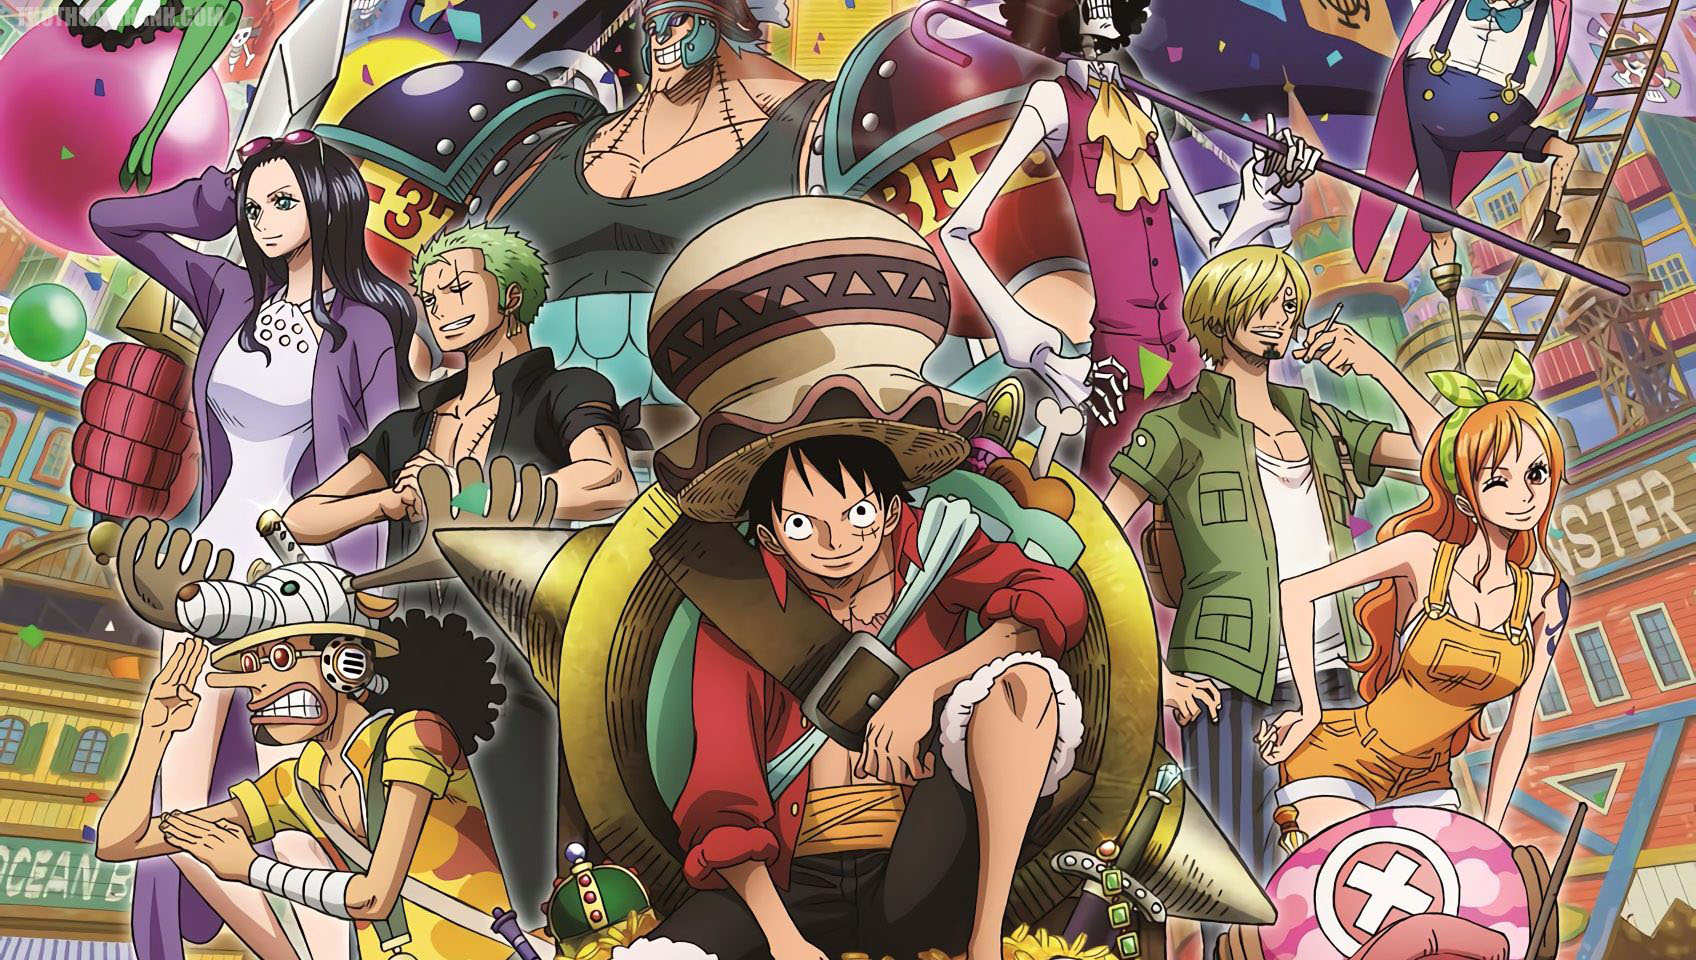 Điểm danh những mỹ nhân được yêu thích của One Piece